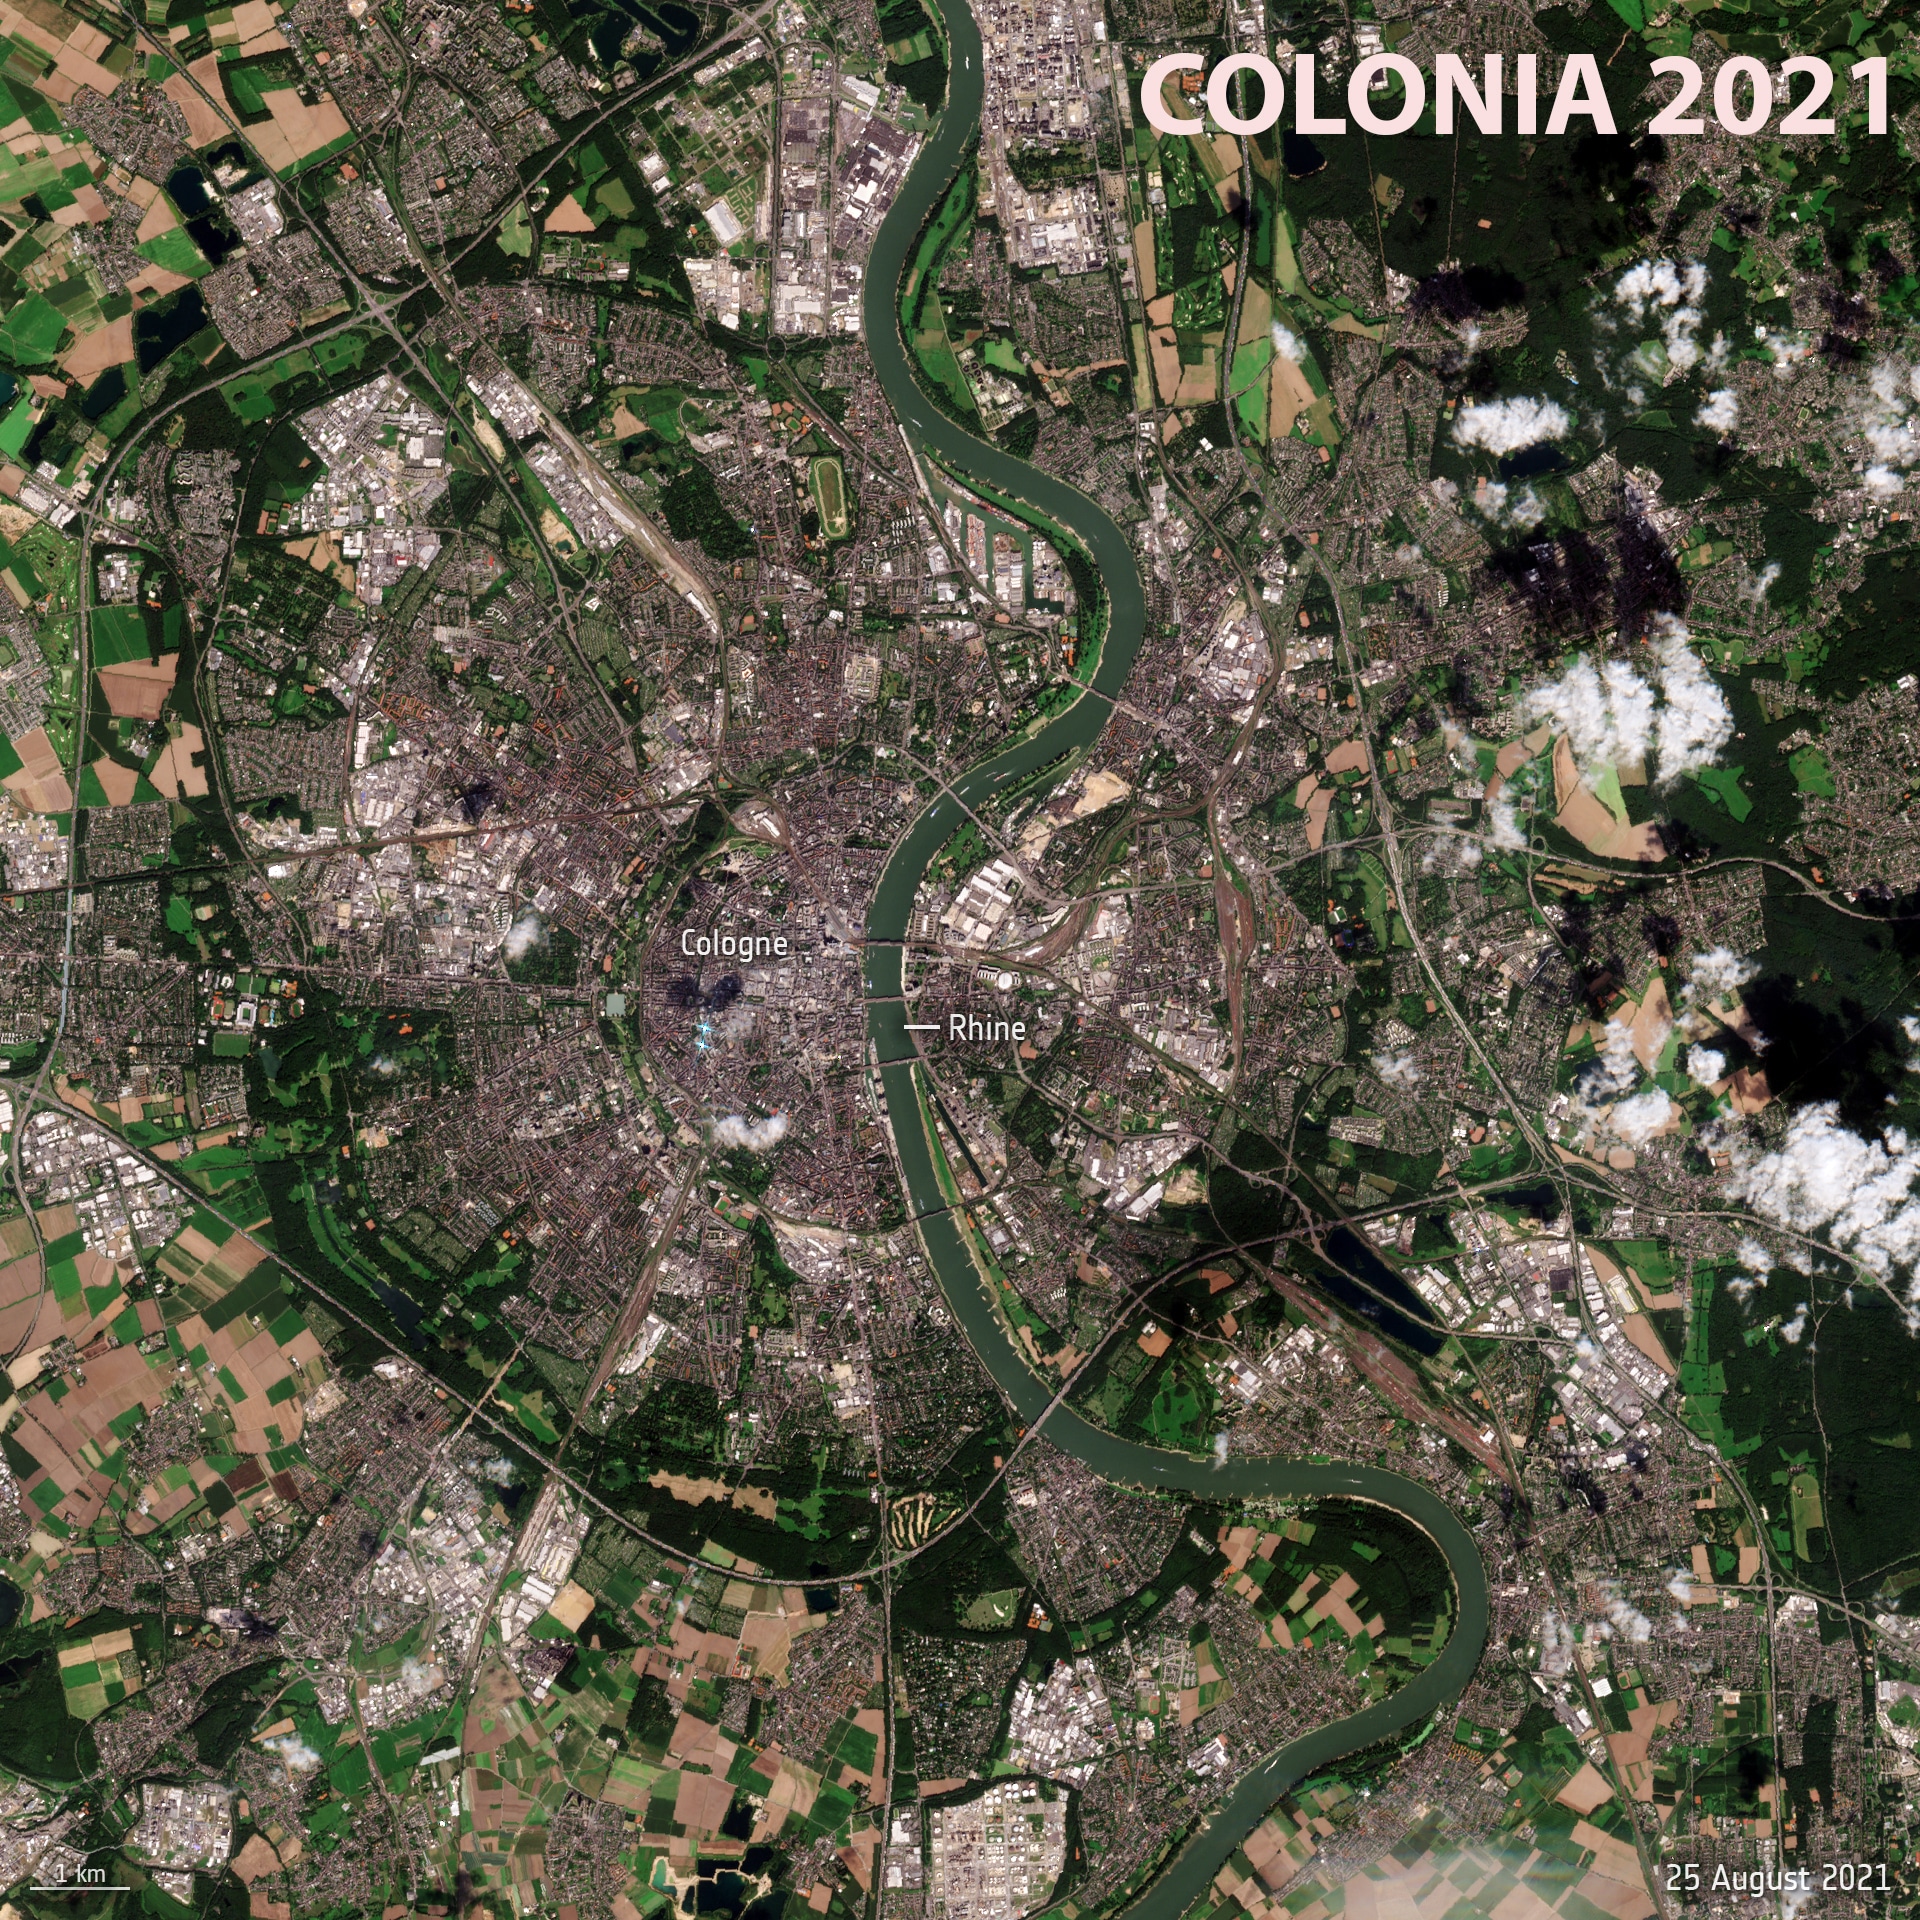 Río Rin a a paso por Colonia en agosto el 19 de agosto de 2021.